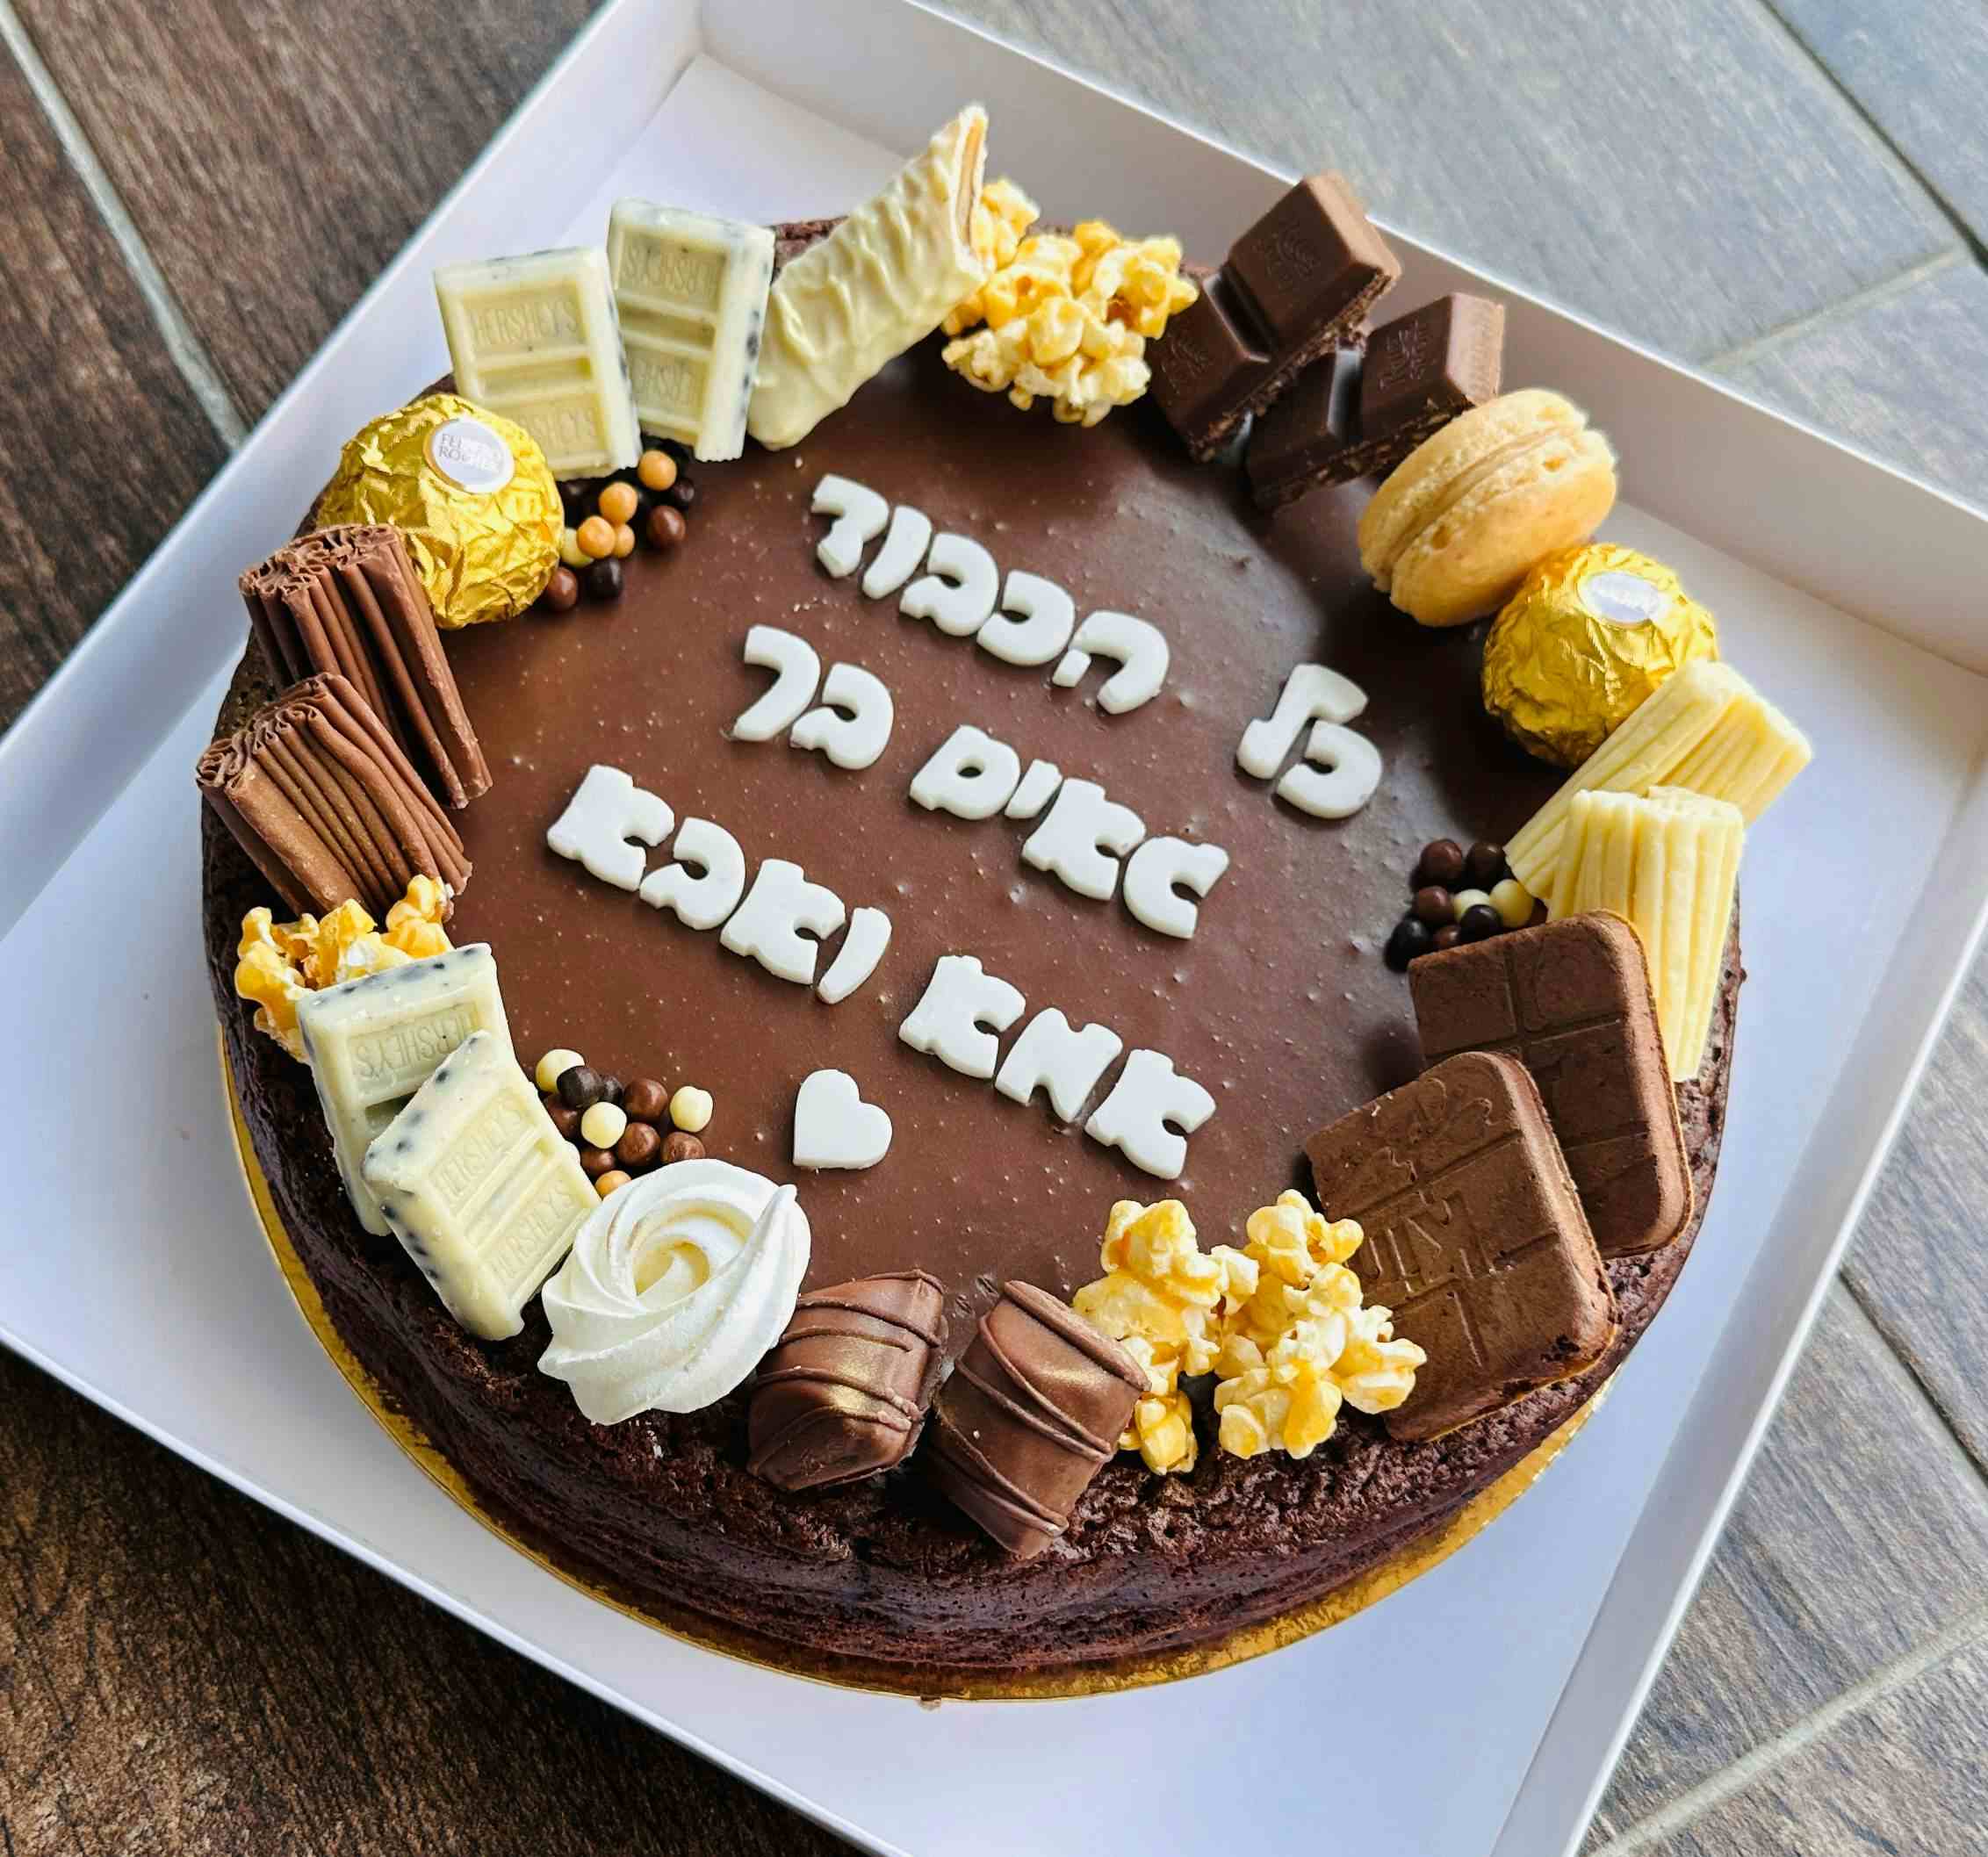  עוגת שוקולד עם ליבת שוקולד עסיסית  ומושחתת ללא קמח (מכילה שקדים) 
דרך מתוקה לסיום לימודים 